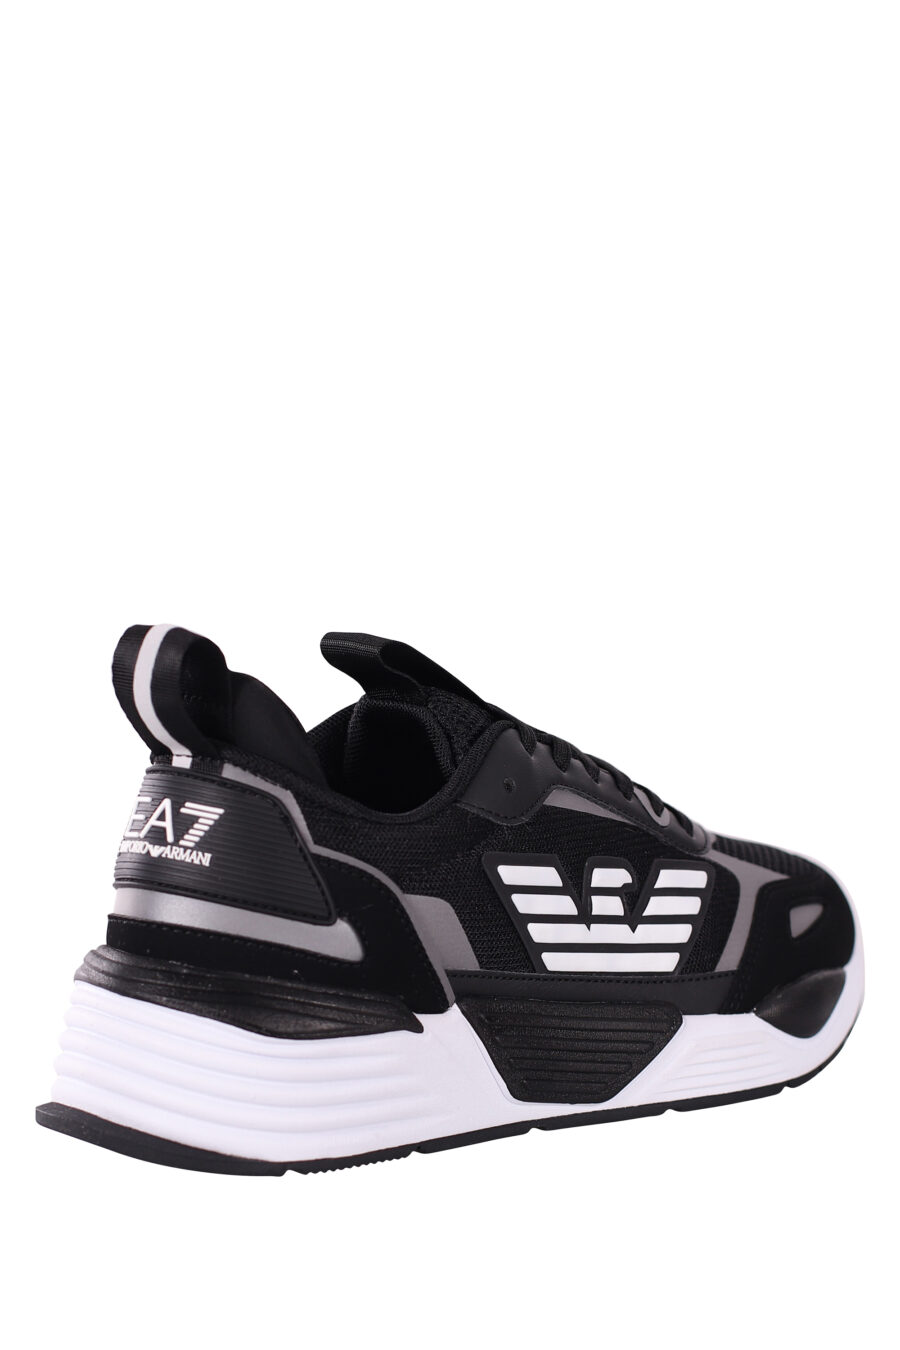 Chaussures "ace runner" noires et argentées avec logo de l'aigle - IMG 5799